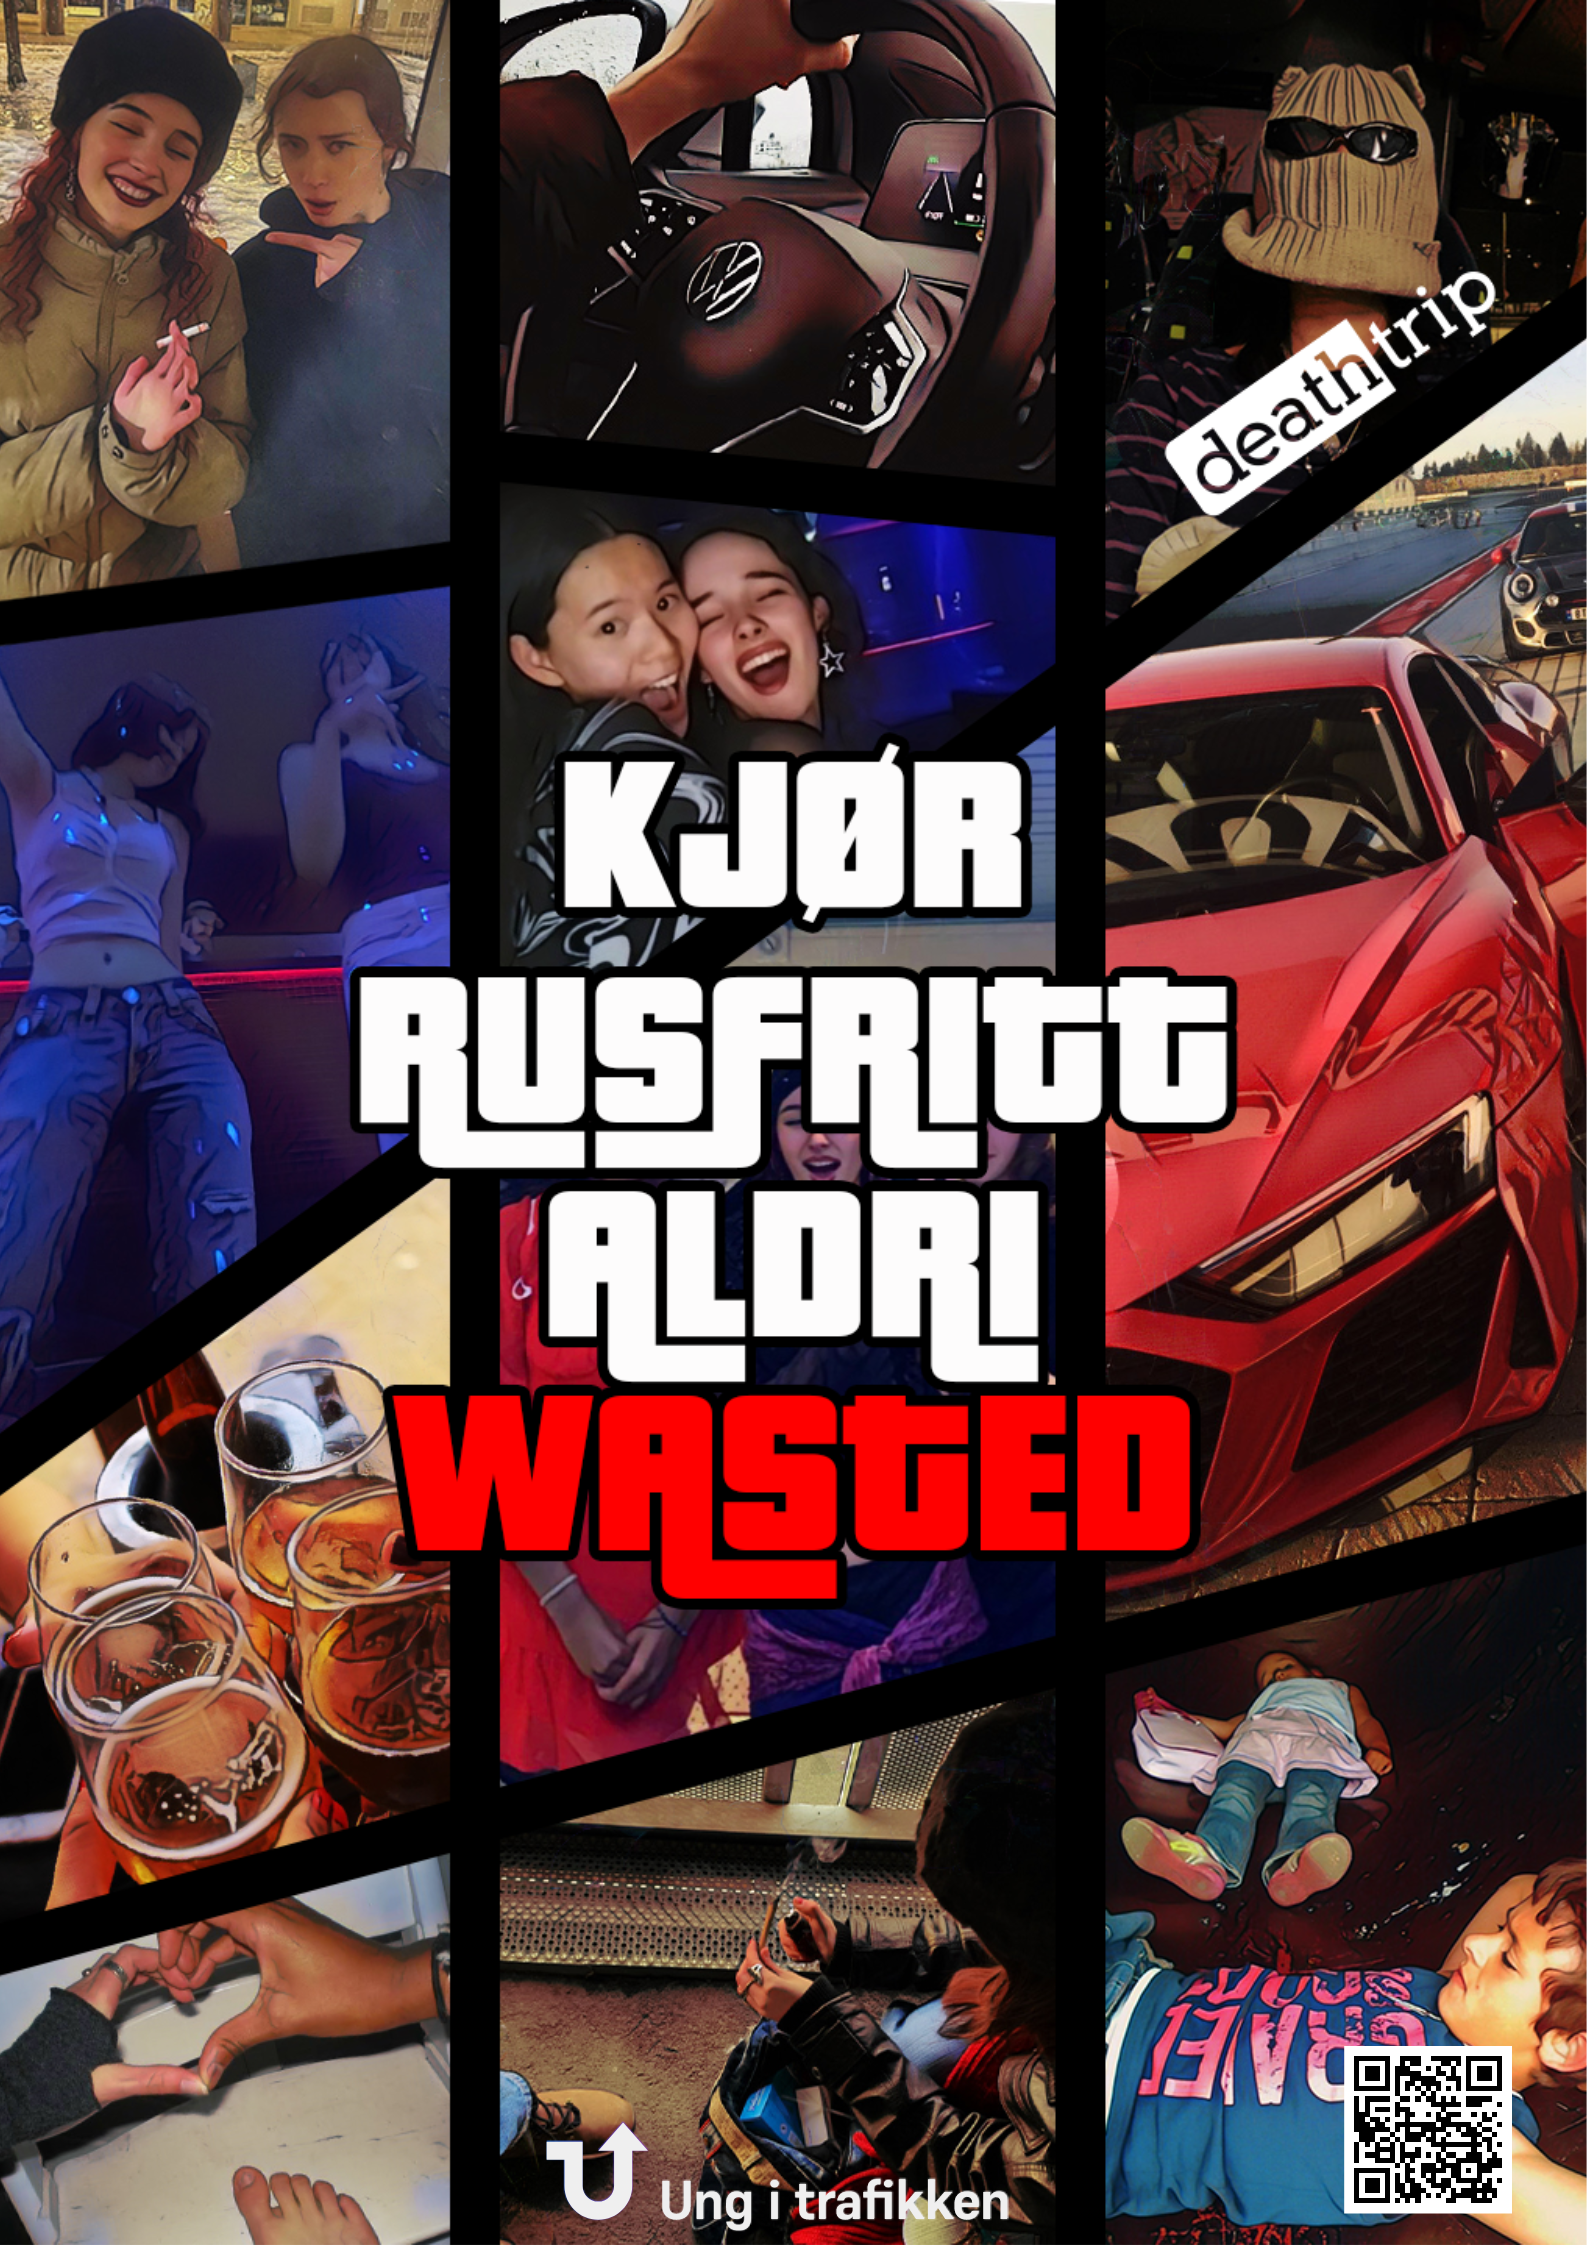 Plakaten er en collage av flere bilder av festligheter, rus, og biler med teksten "Kjør rusfritt, aldri Wasted". Det er et spill på GTA og det å være Wasted i spillet betyr død.